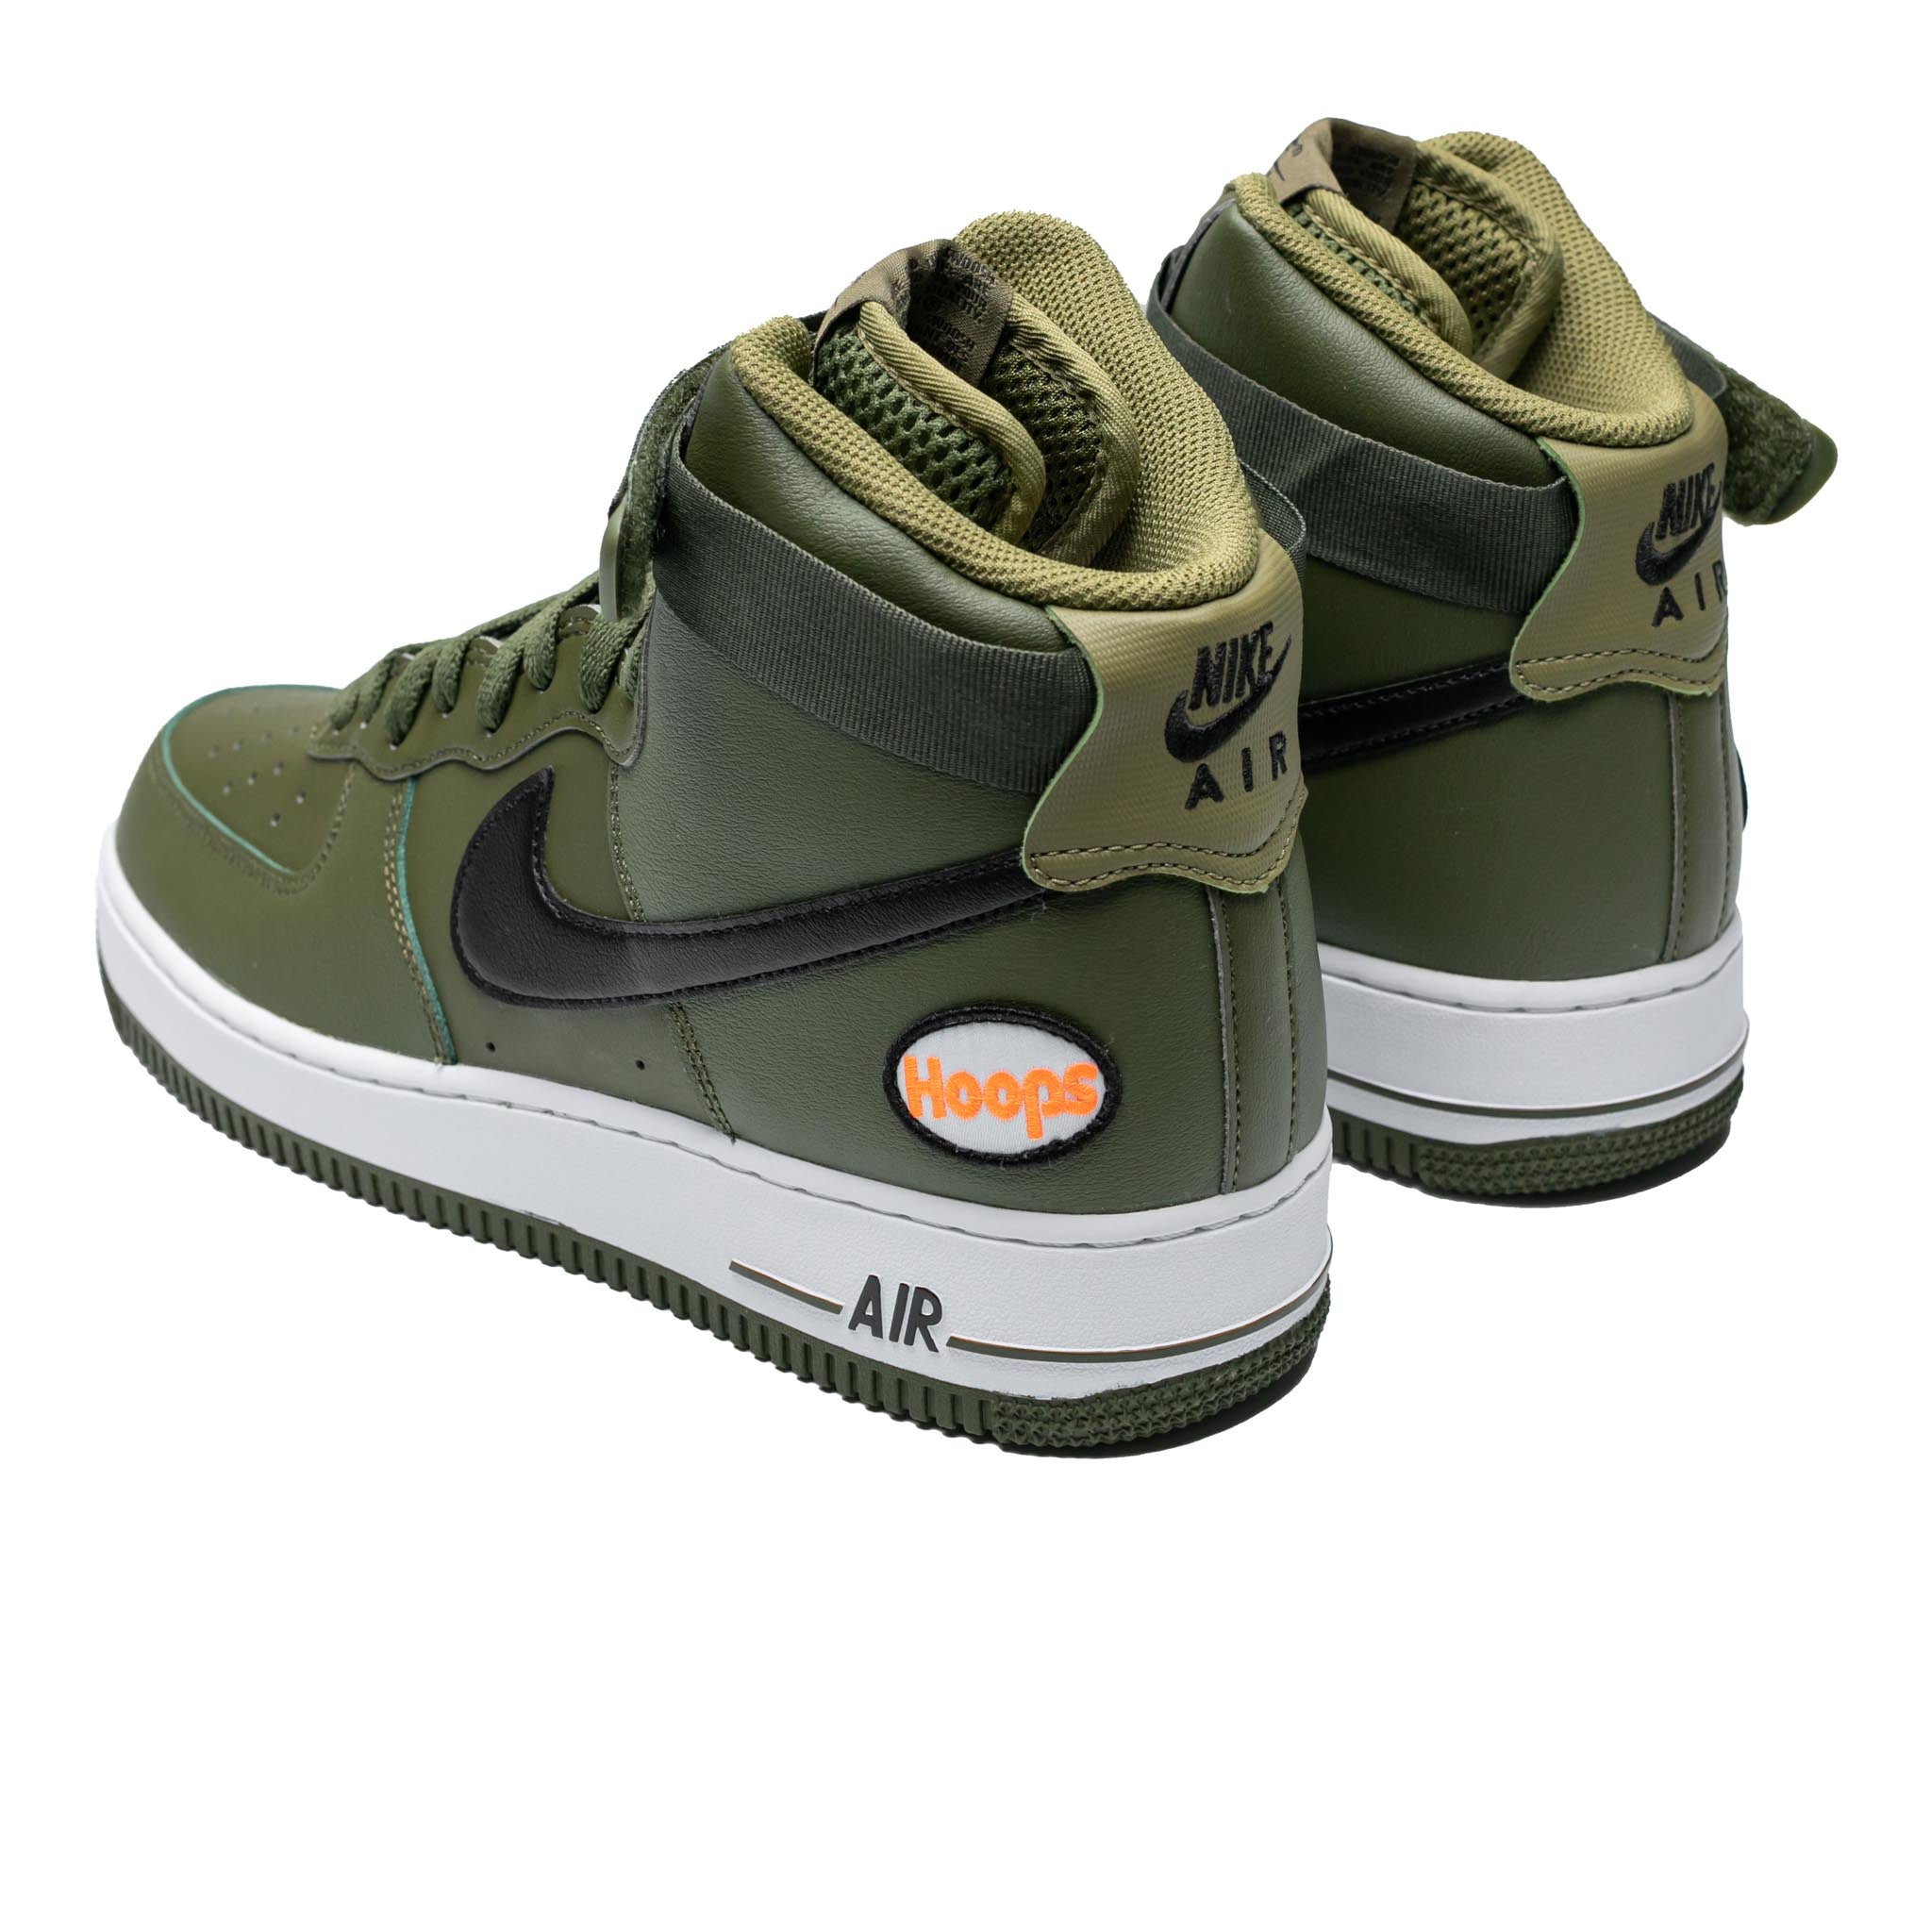 Nike Air Force 1 High '07 LV8 'Hoops Pack - Rough Green' DH7453-300 - KICKS  CREW